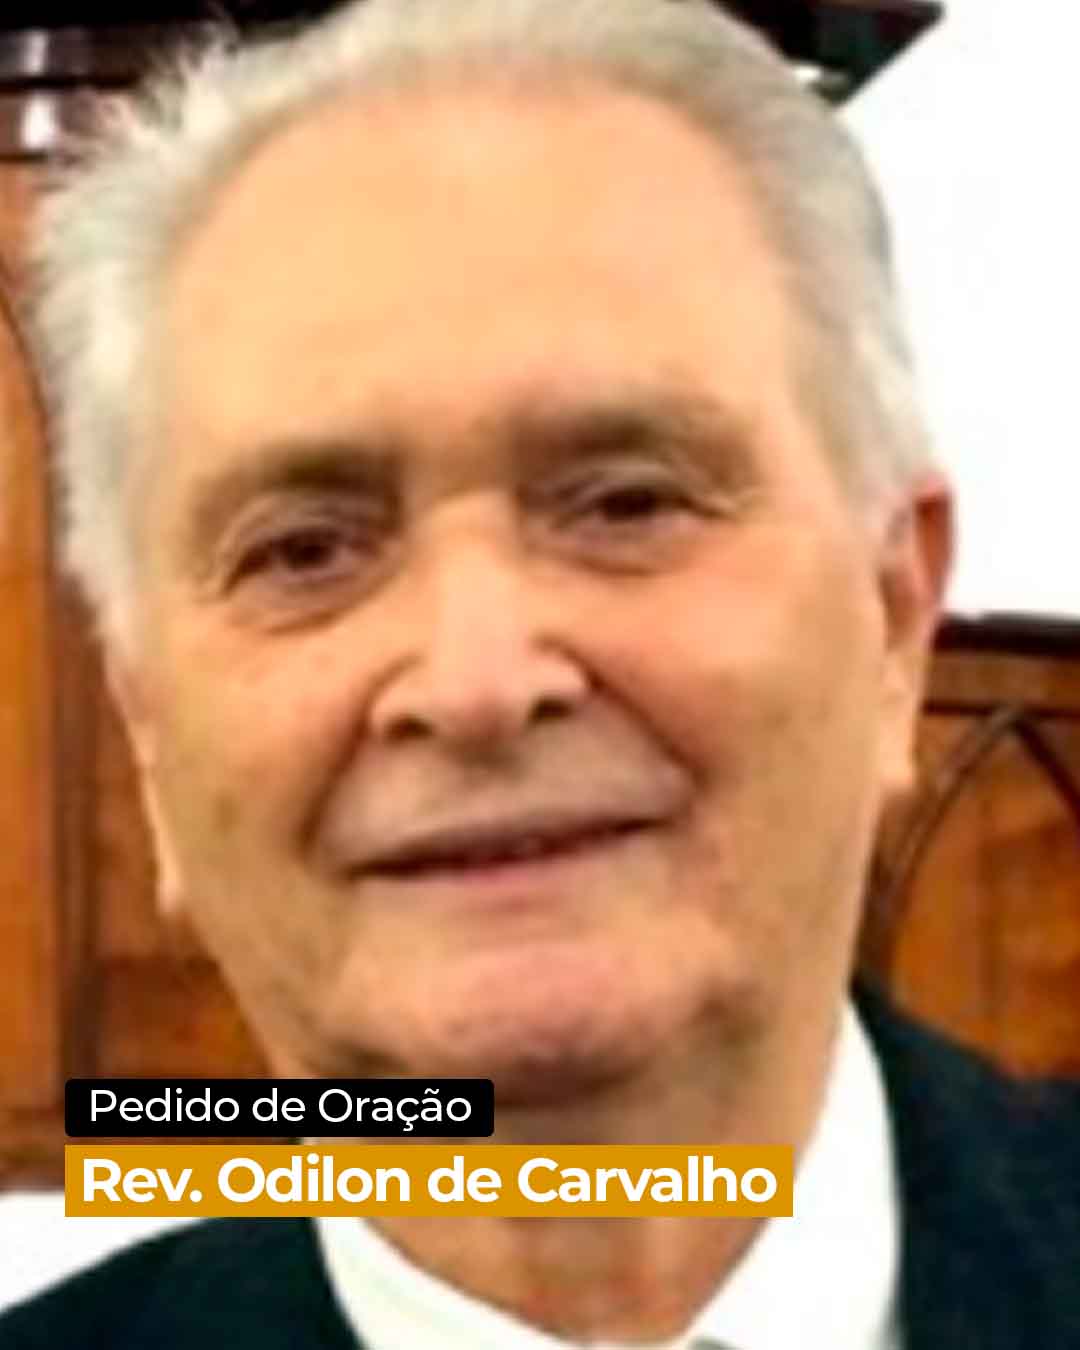 Pedido de Oração – Rev. Odilon de Carvalho